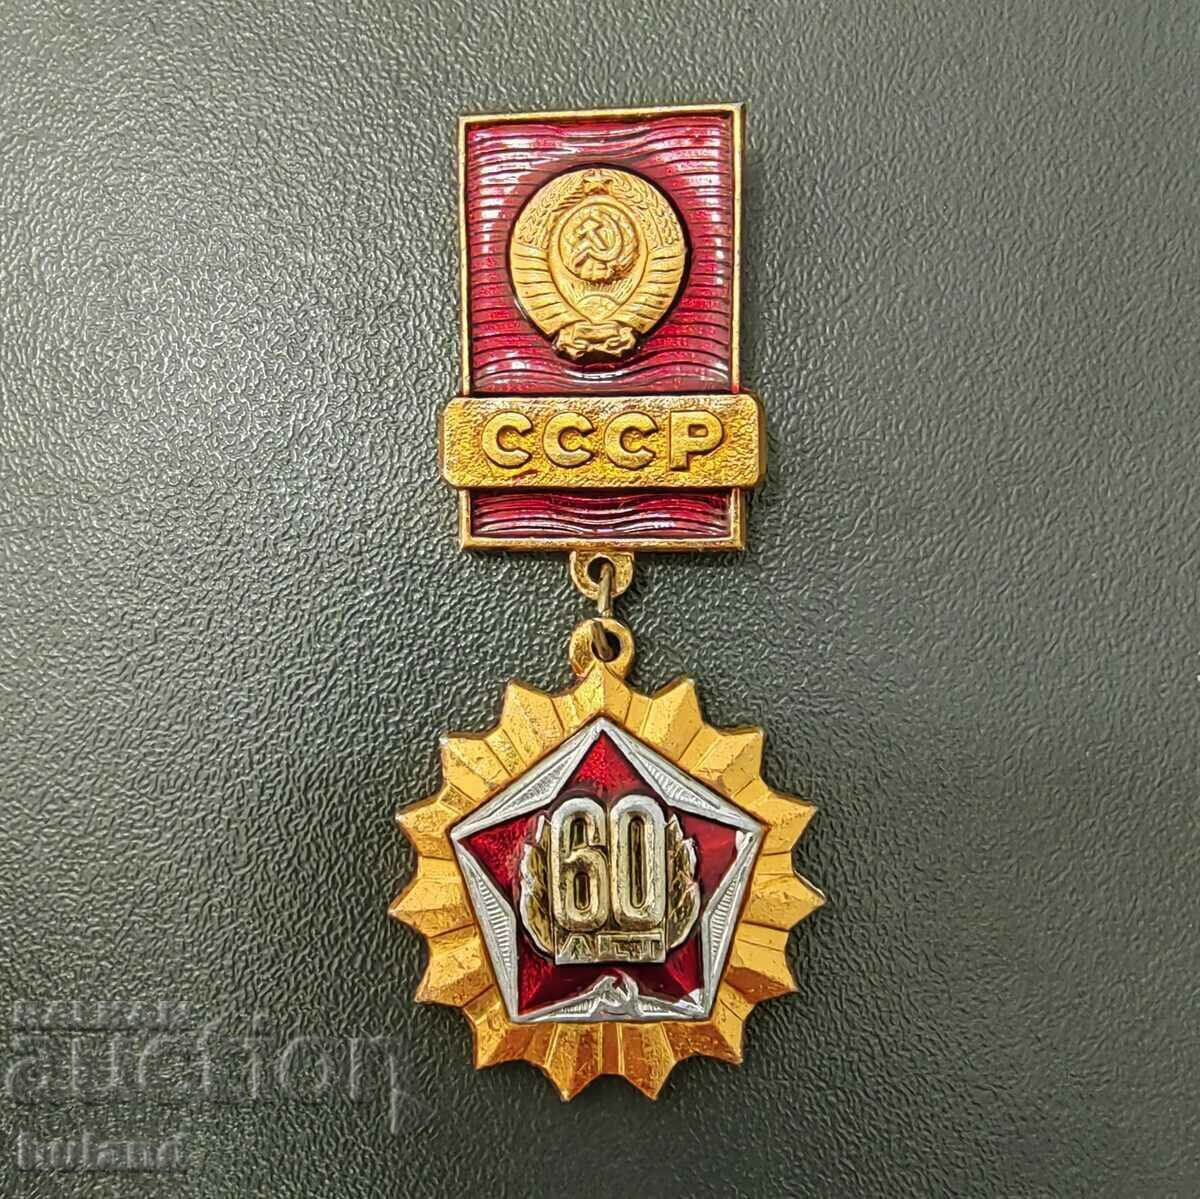 Παλαιό Σοβιετικό Κοινωνικό Σήμα 60 Χρόνια Εθνόσημο της ΕΣΣΔ Σφυροδρέπανο